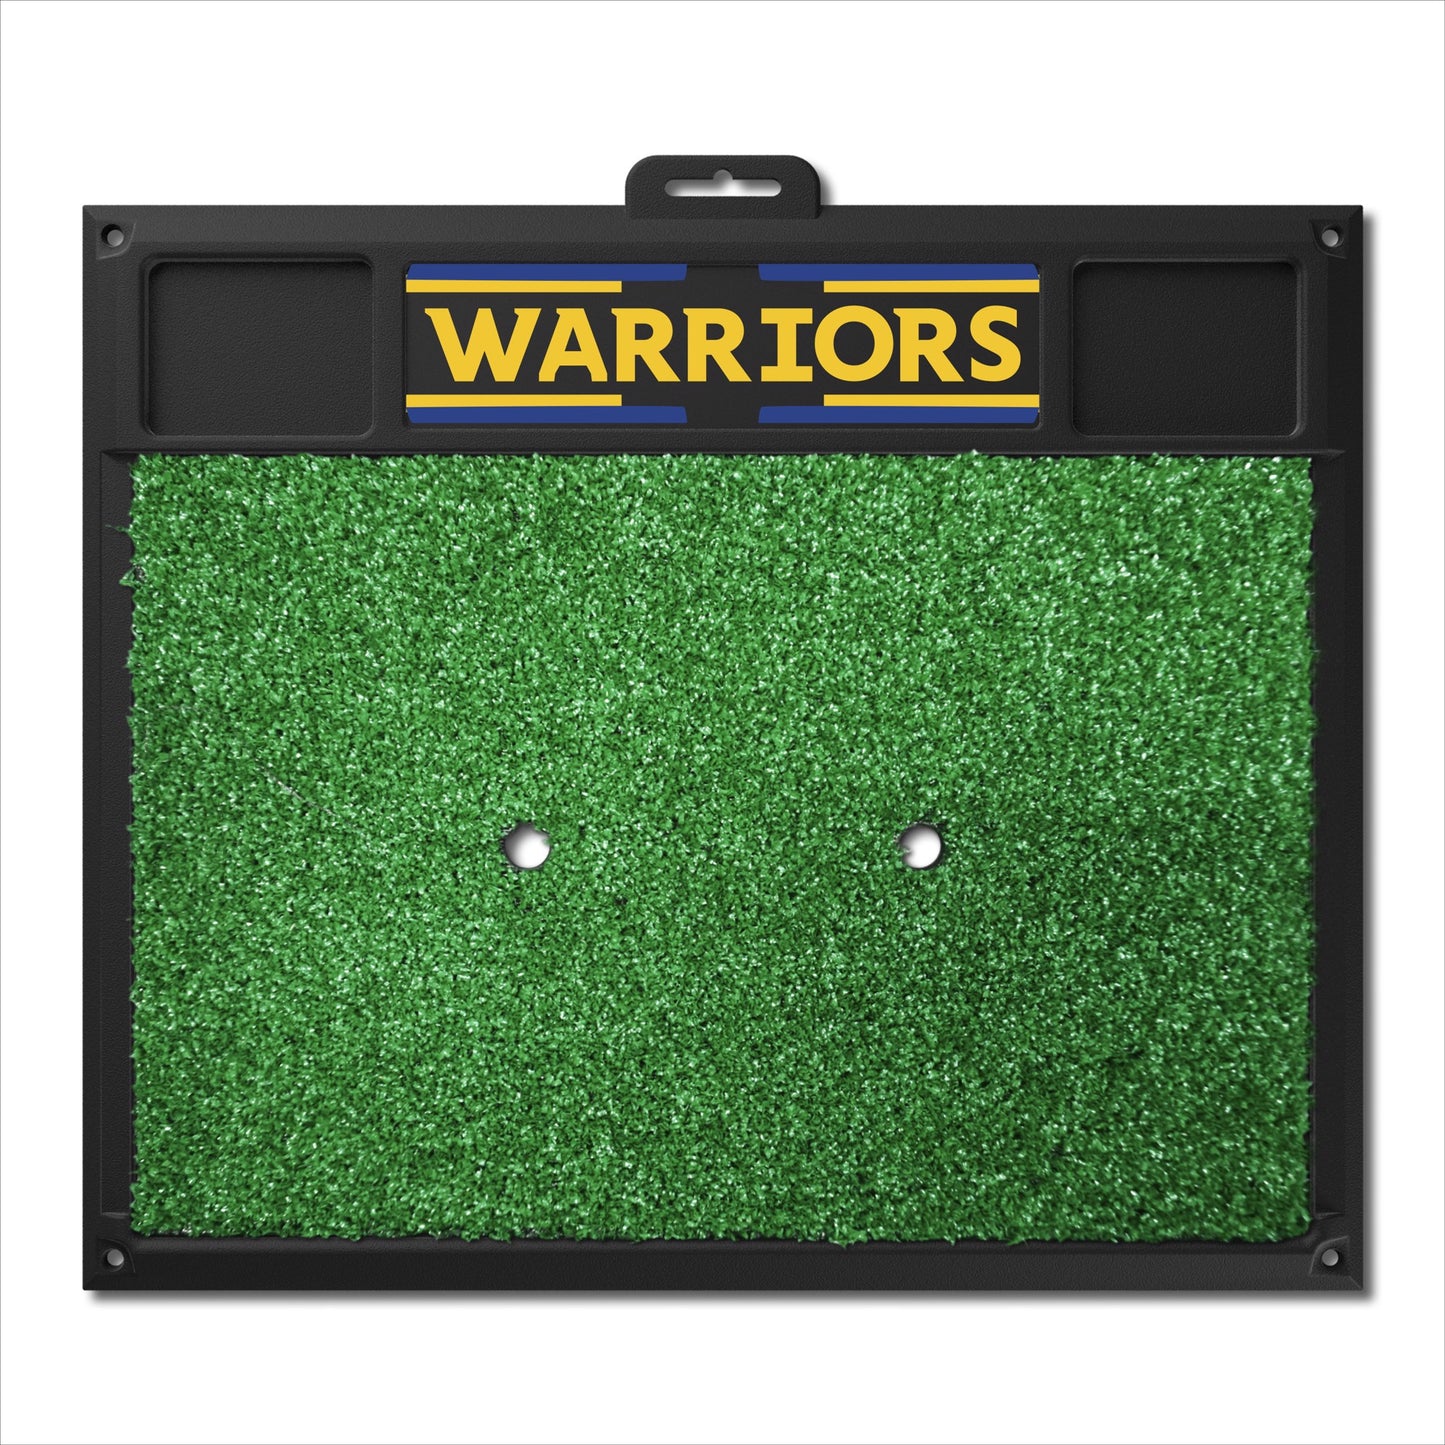 Golden State Warriors Golf Hitting Mat by Fanmats